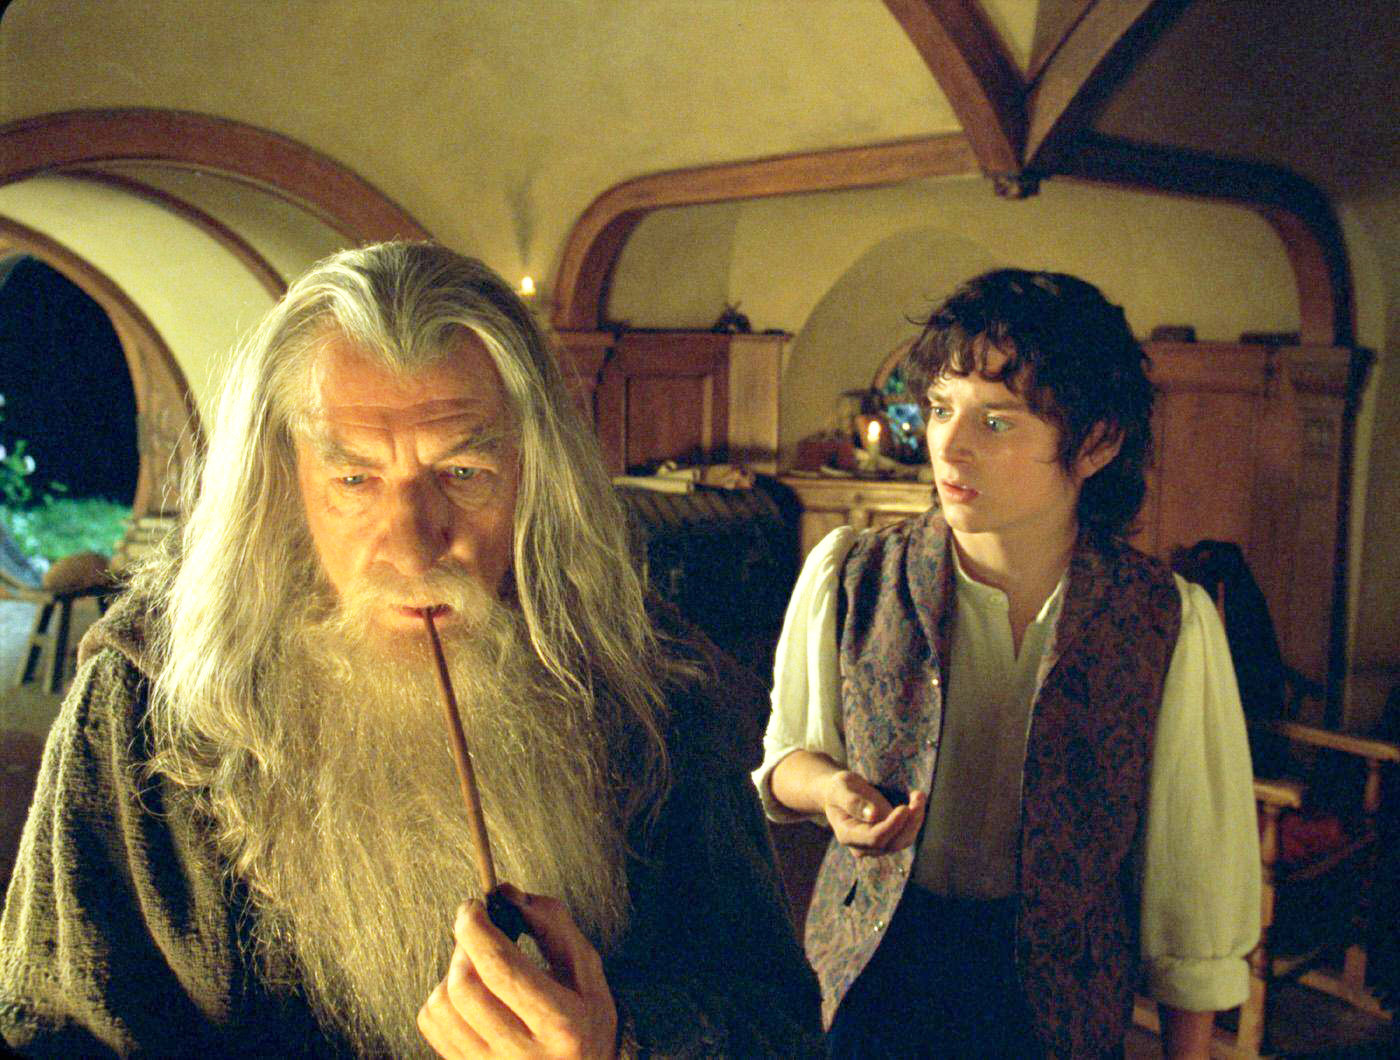 Фродо постарел, а Леголас встречается с Кэтти Перри. Как сложилась судьба звезд «Властелина колец» в реальной жизни